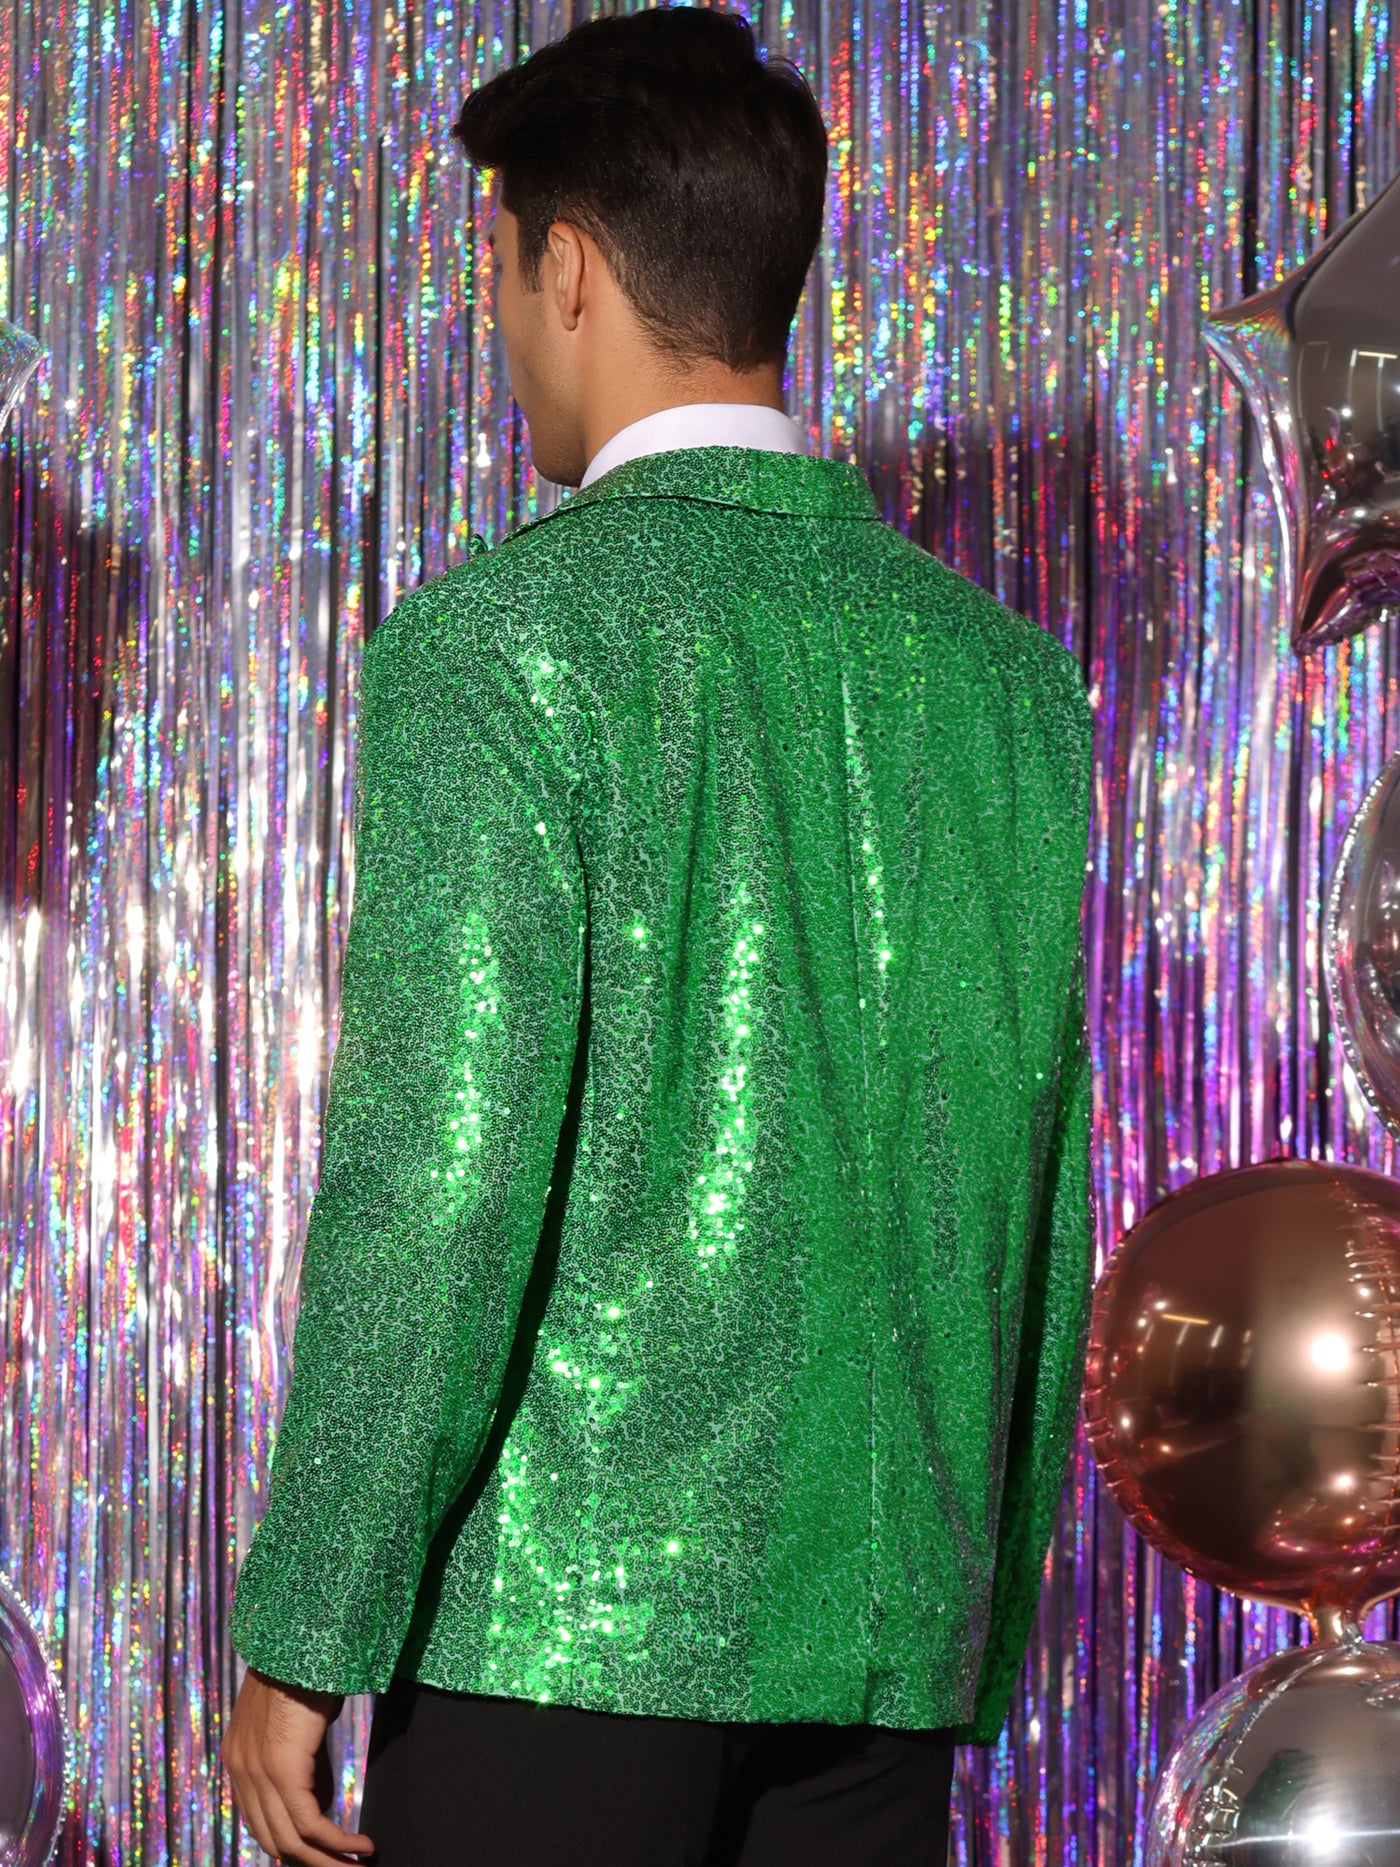 Bublédon Sequin Blazer for Men's Peak Lapel Color Block Shiny Sparkle Sports Coat